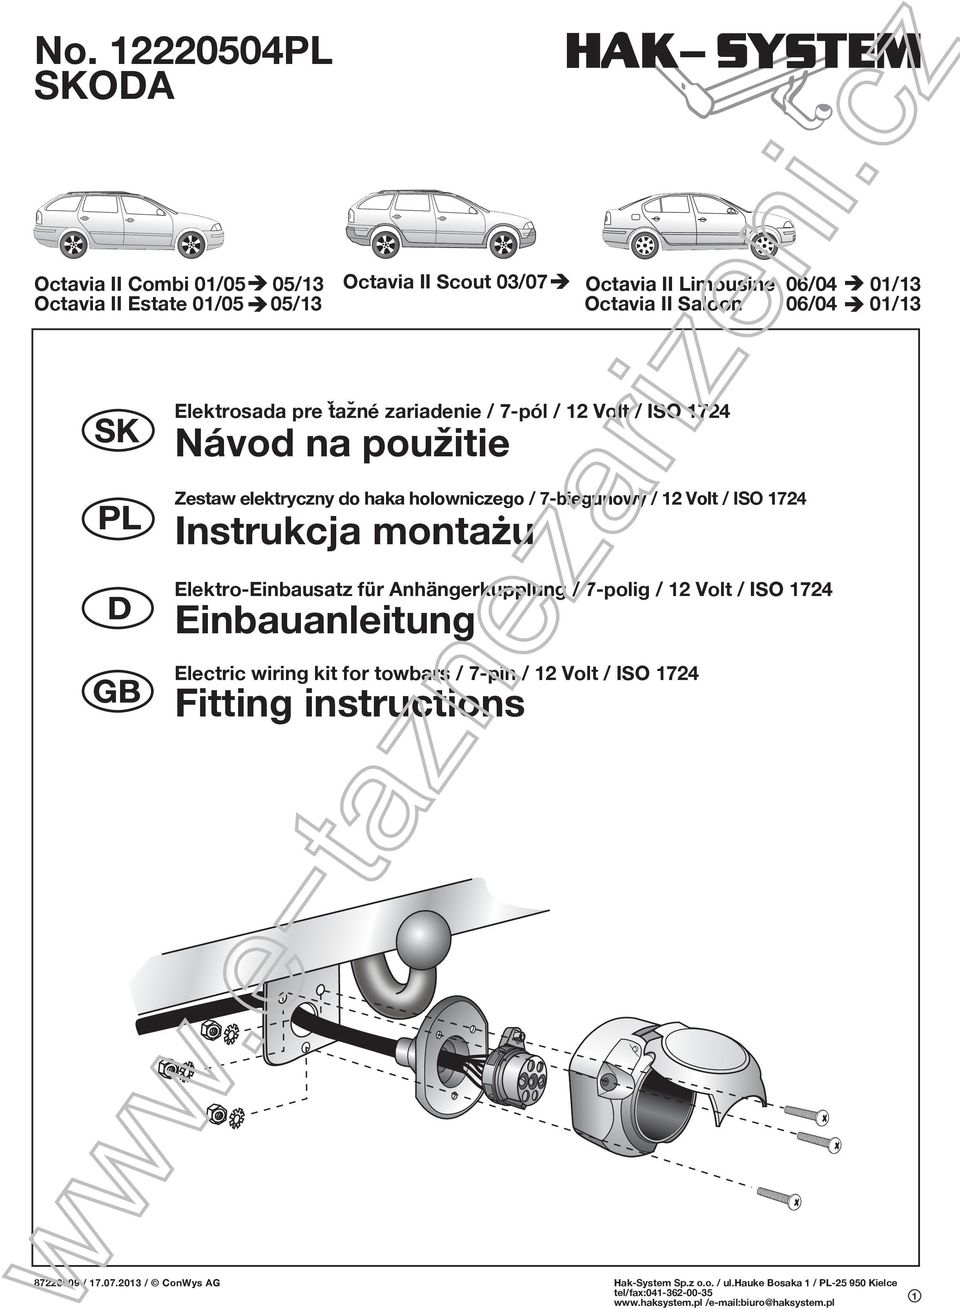 Zestaw elektryczny do haka holowniczego / 7-biegunowy / 12 Volt / ISO 1724 Instrukcja montazu Elektro-Einbausatz für